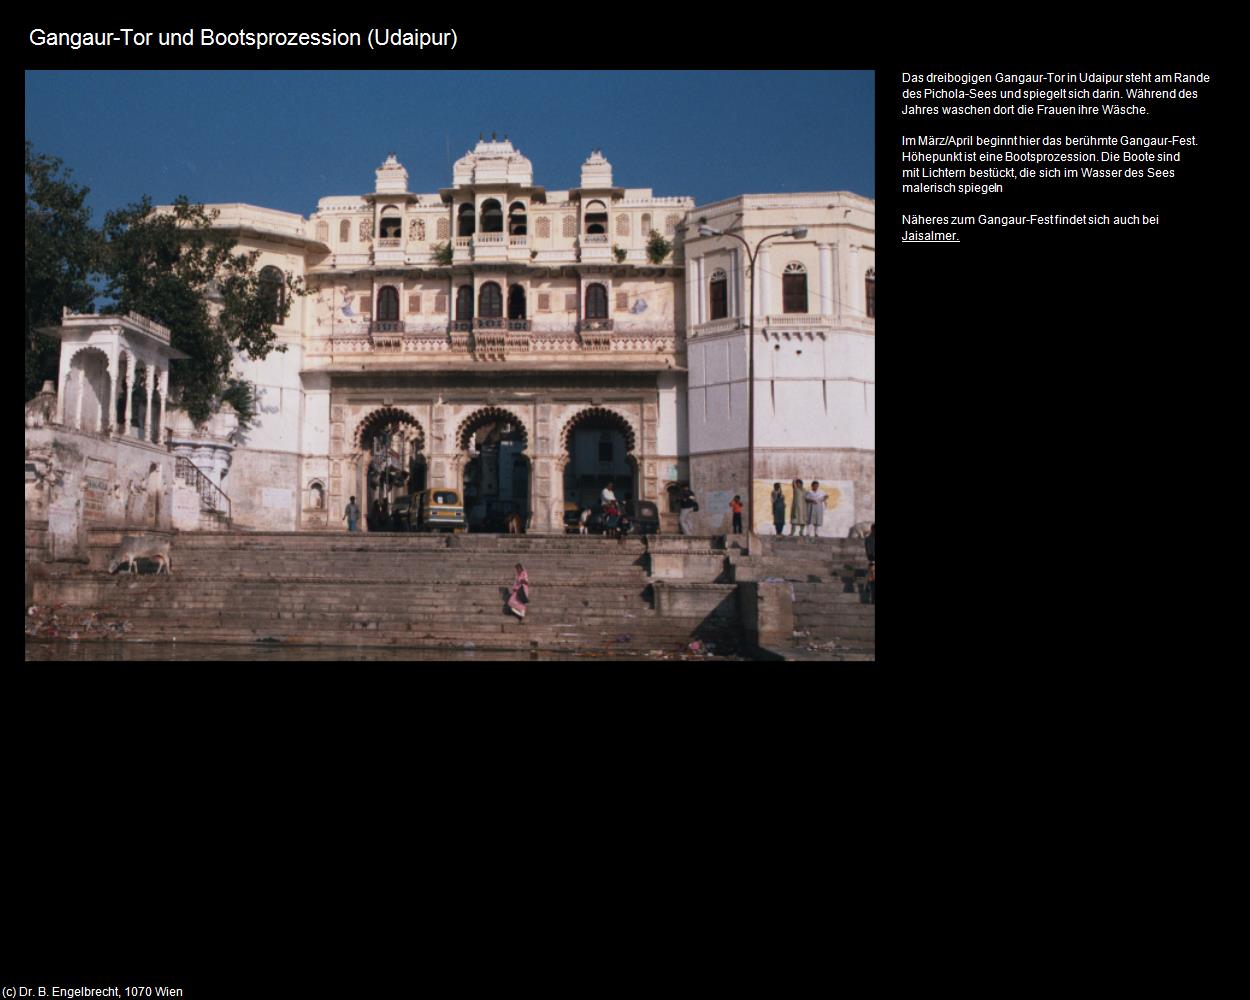 Gangaur-Tor und Bootsprozession (Udaipur) in Rajasthan - das Land der Könige(c)B.Engelbrecht